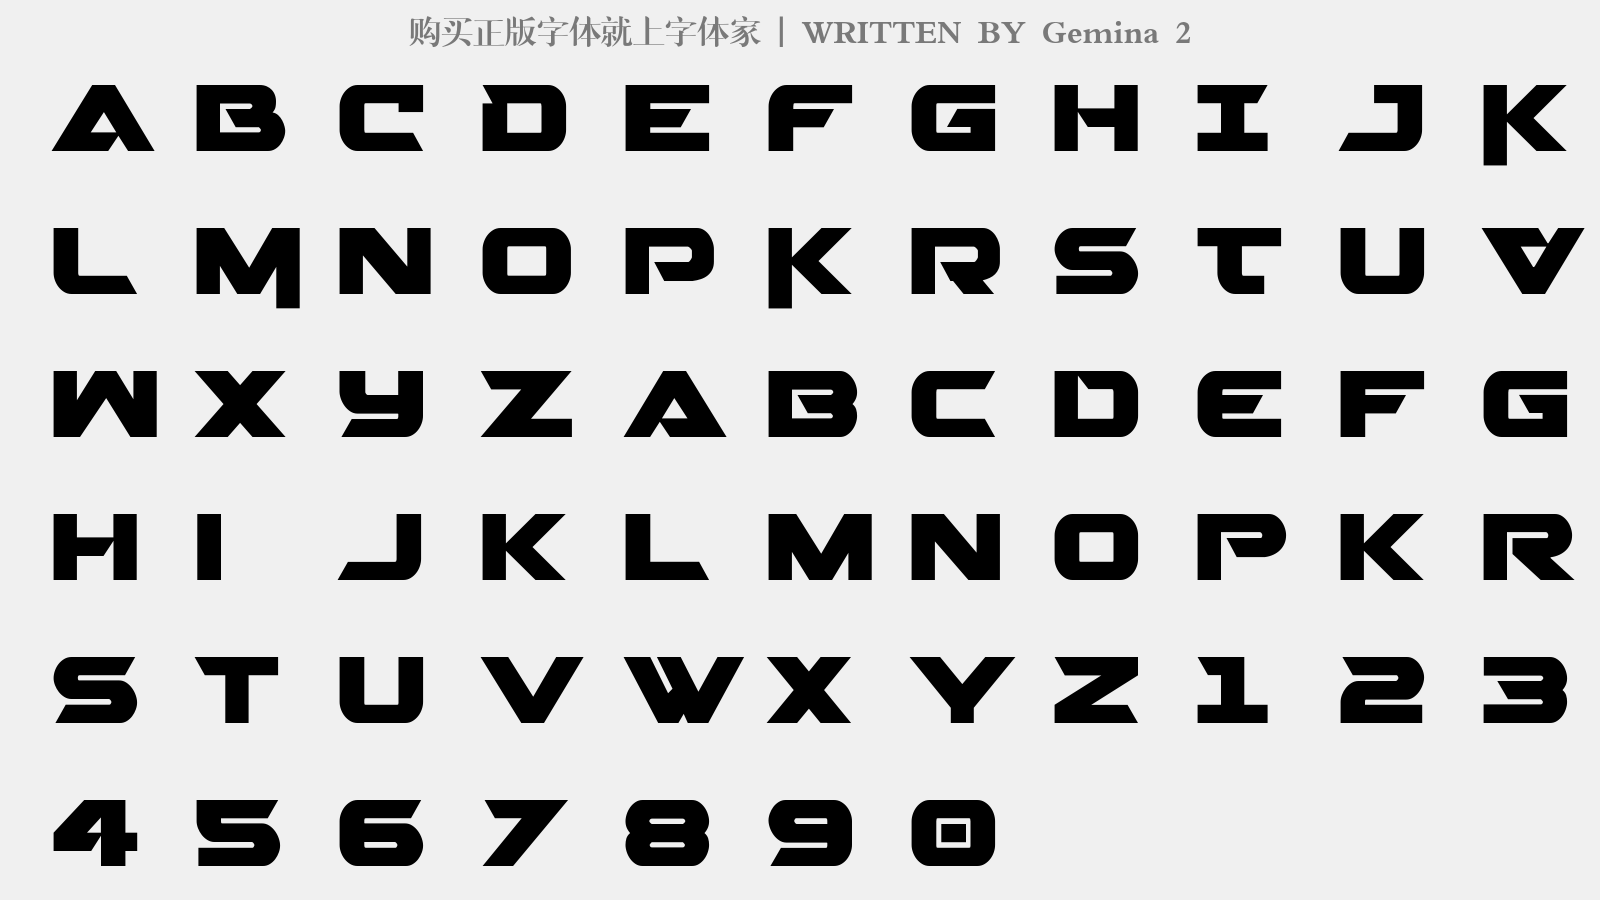 Gemina 2 - 大写字母/小写字母/数字